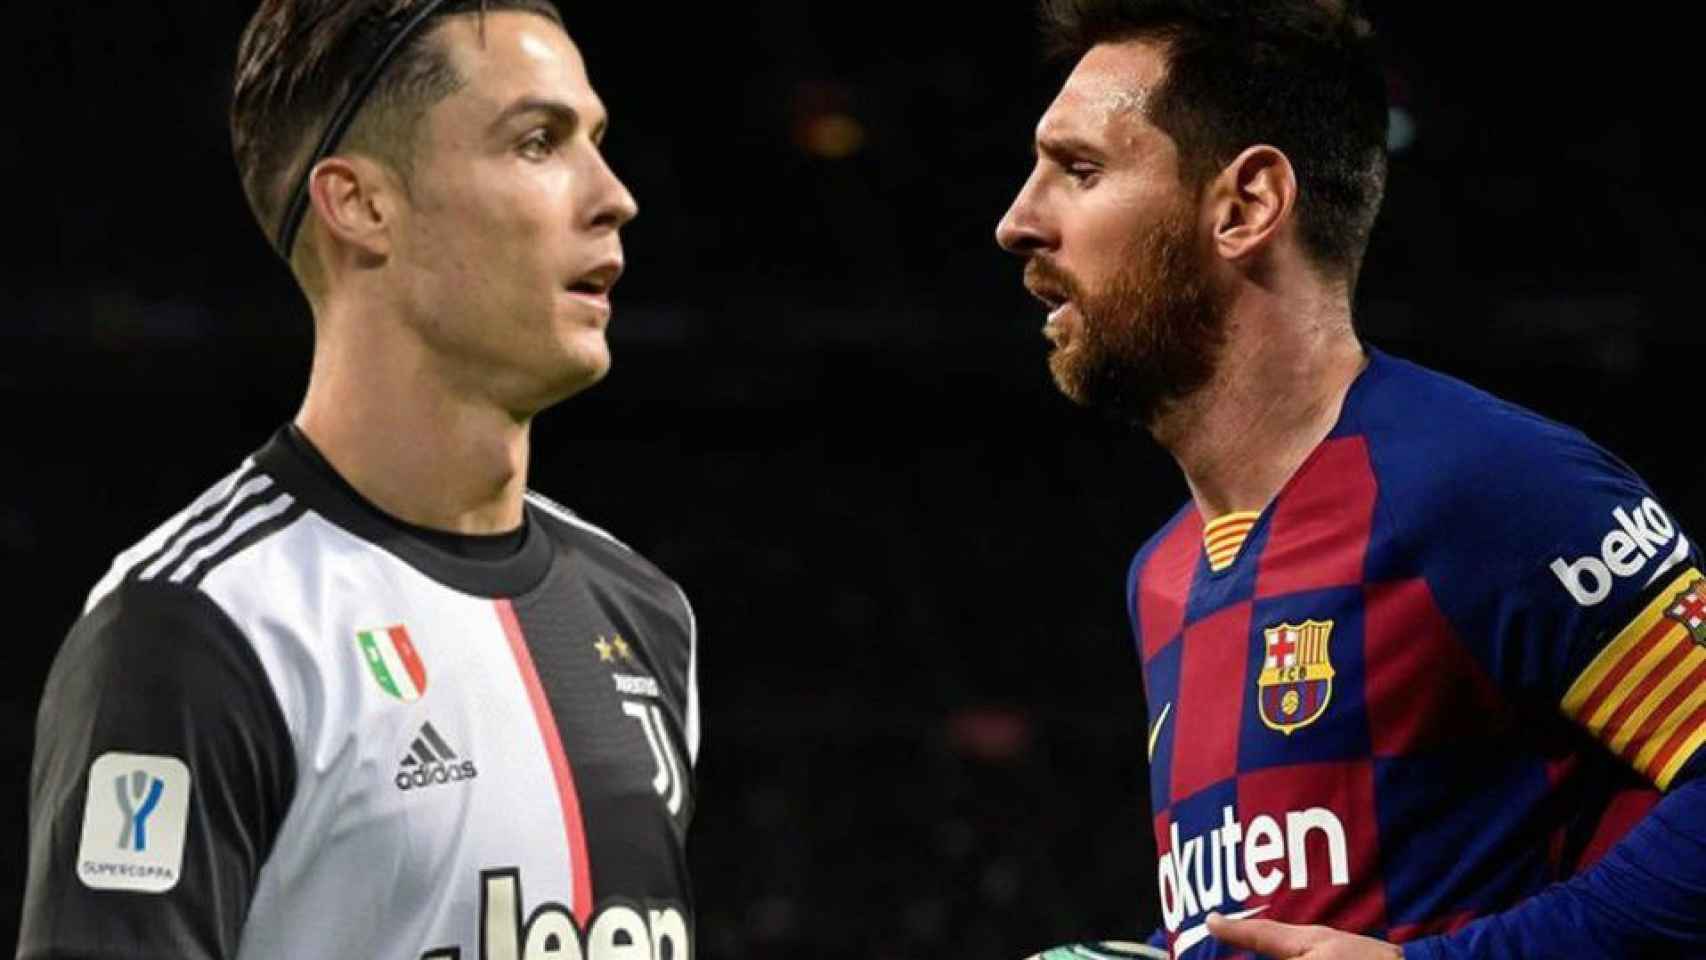 Messi y Cristiano Ronaldo, en un montaje | Culemanía